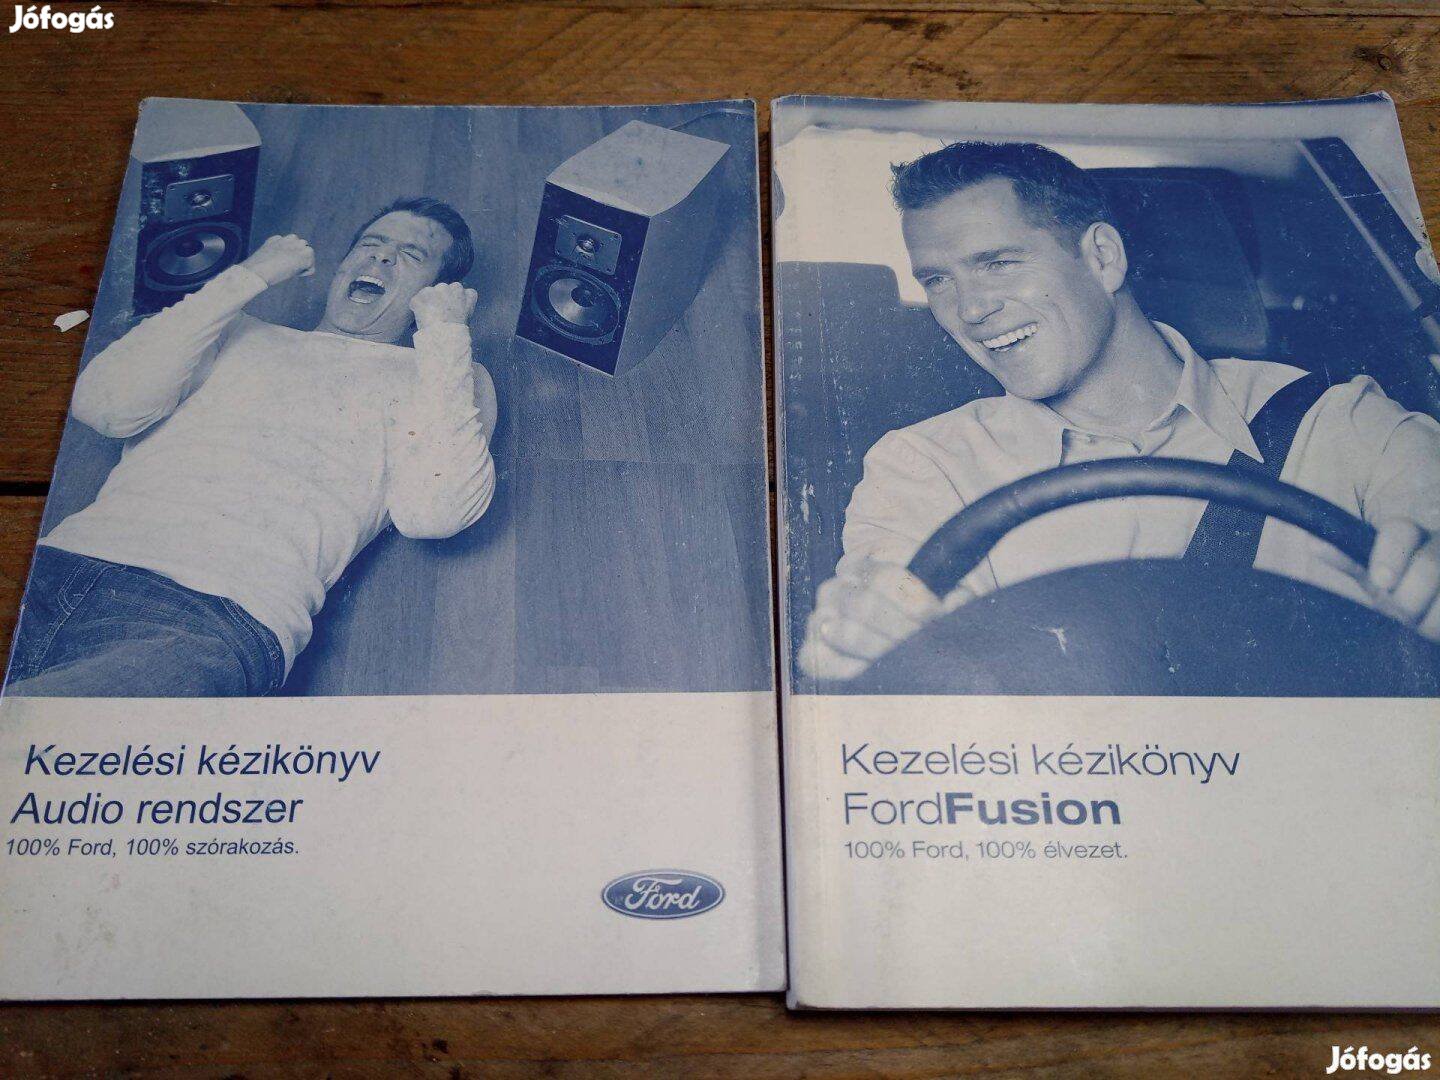 Eladó Ford fusion kezelési kézikönyv 2005 től